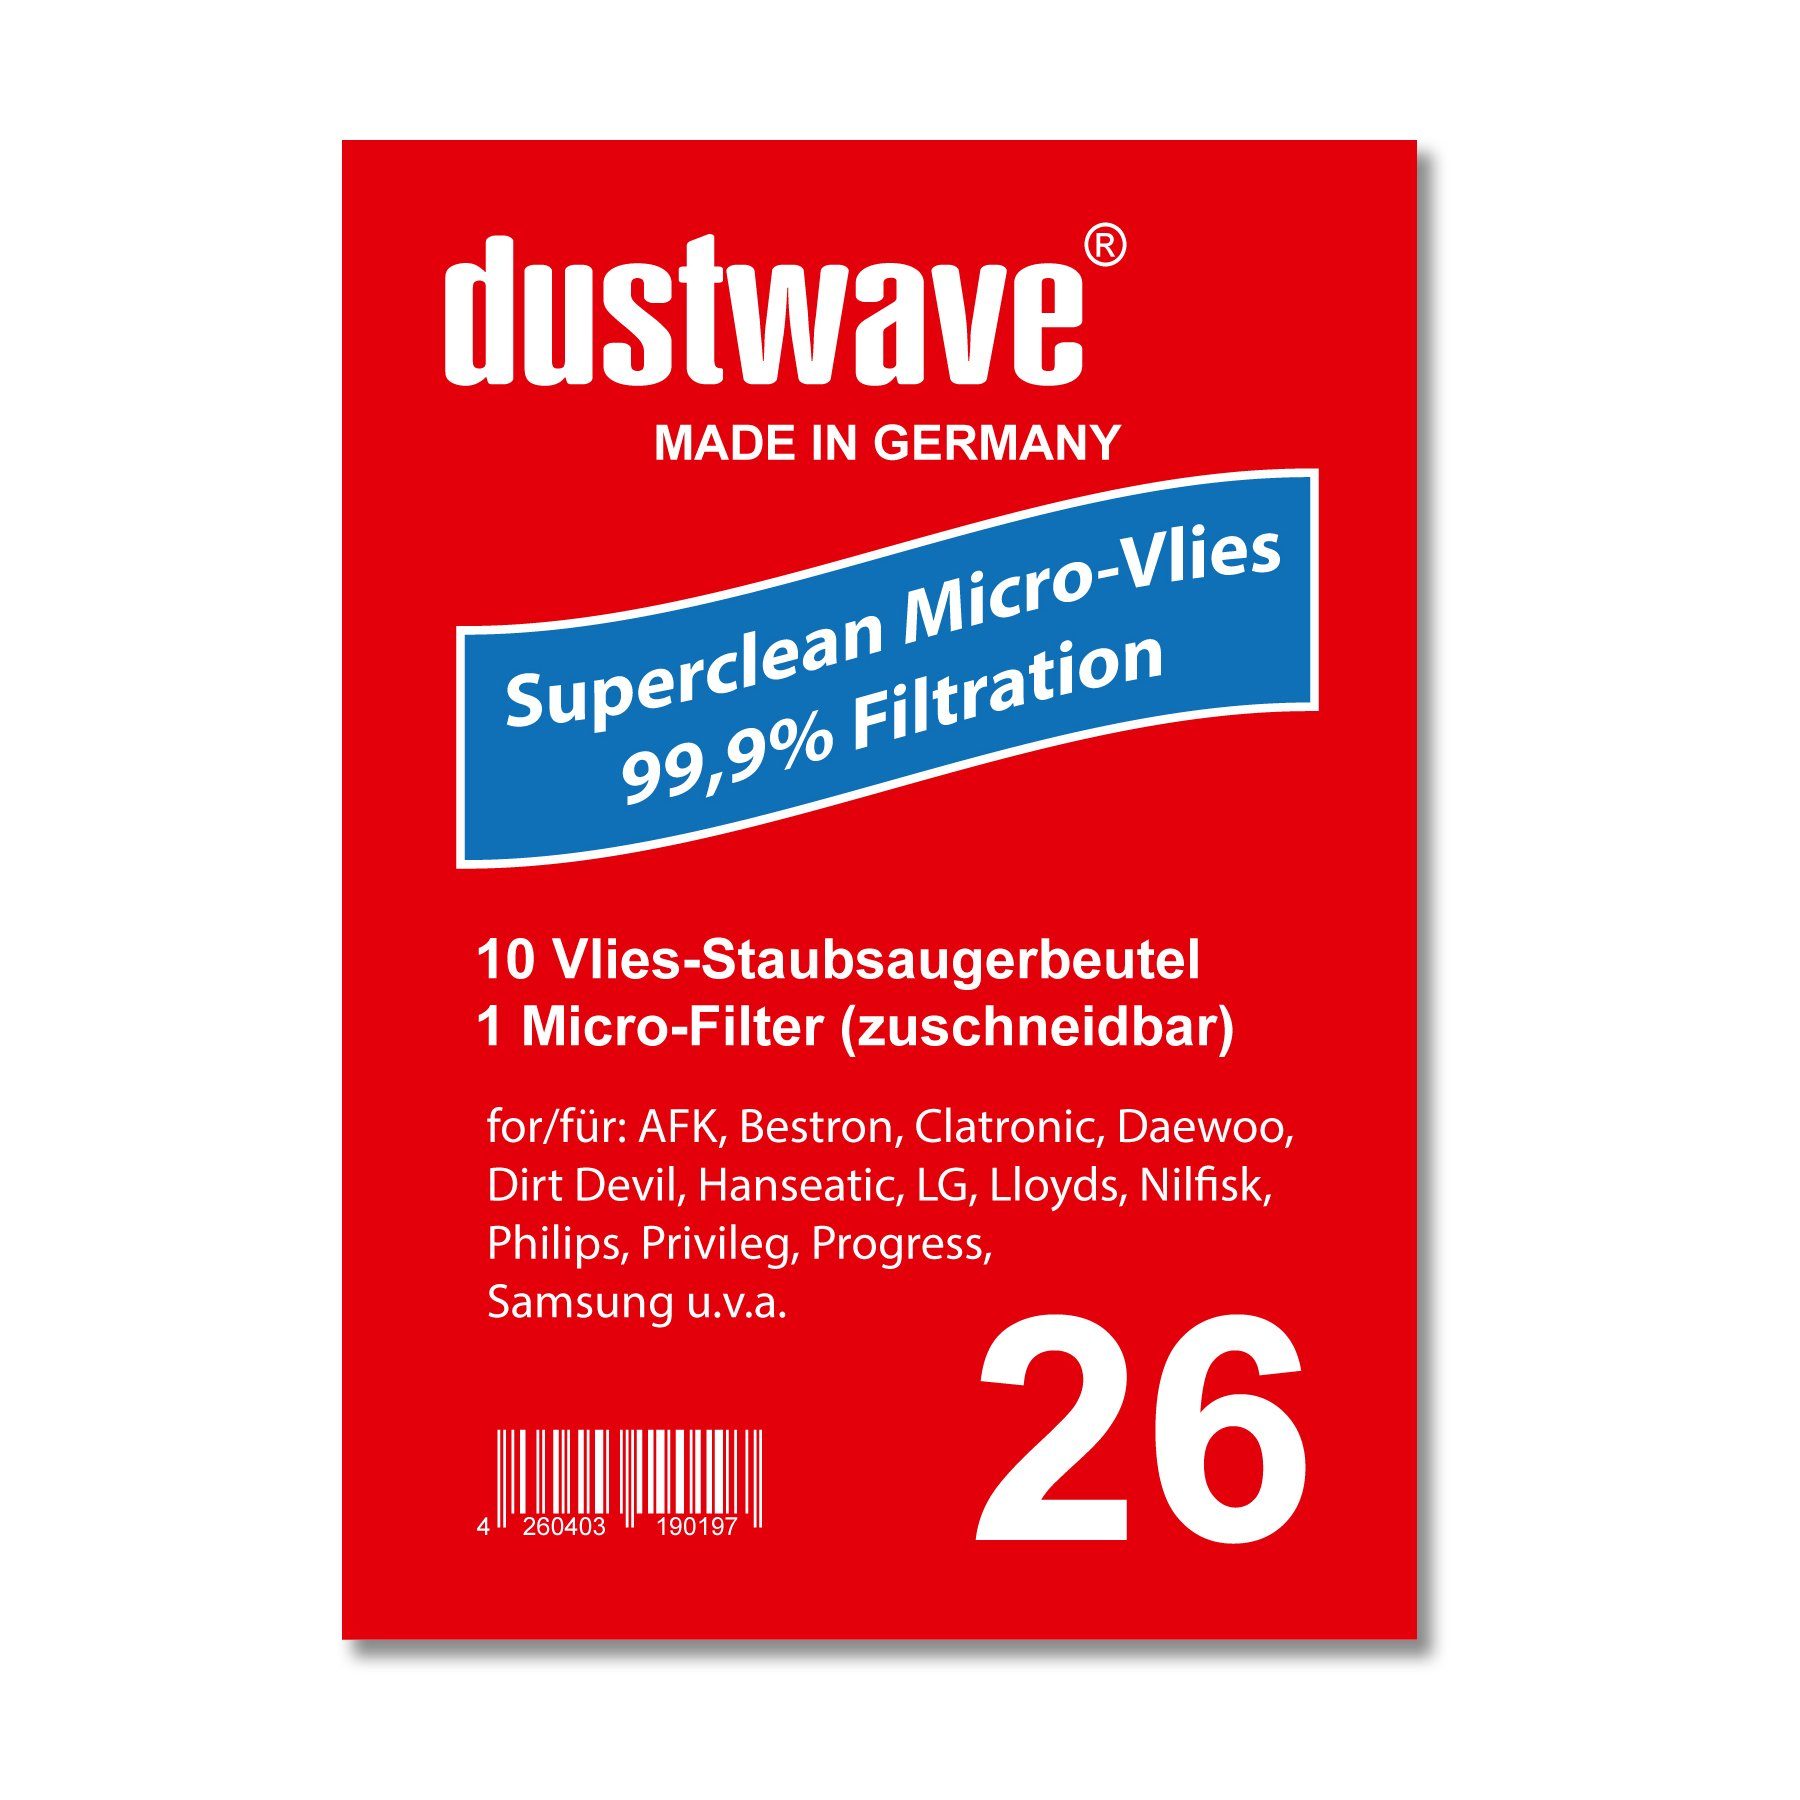 Dustwave Staubsaugerbeutel Sparpack, passend für Adix QU 340, 10 St., Sparpack, 10 Staubsaugerbeutel + 1 Hepa-Filter (ca. 15x15cm - zuschneidbar) Adix QU 340 - Standard